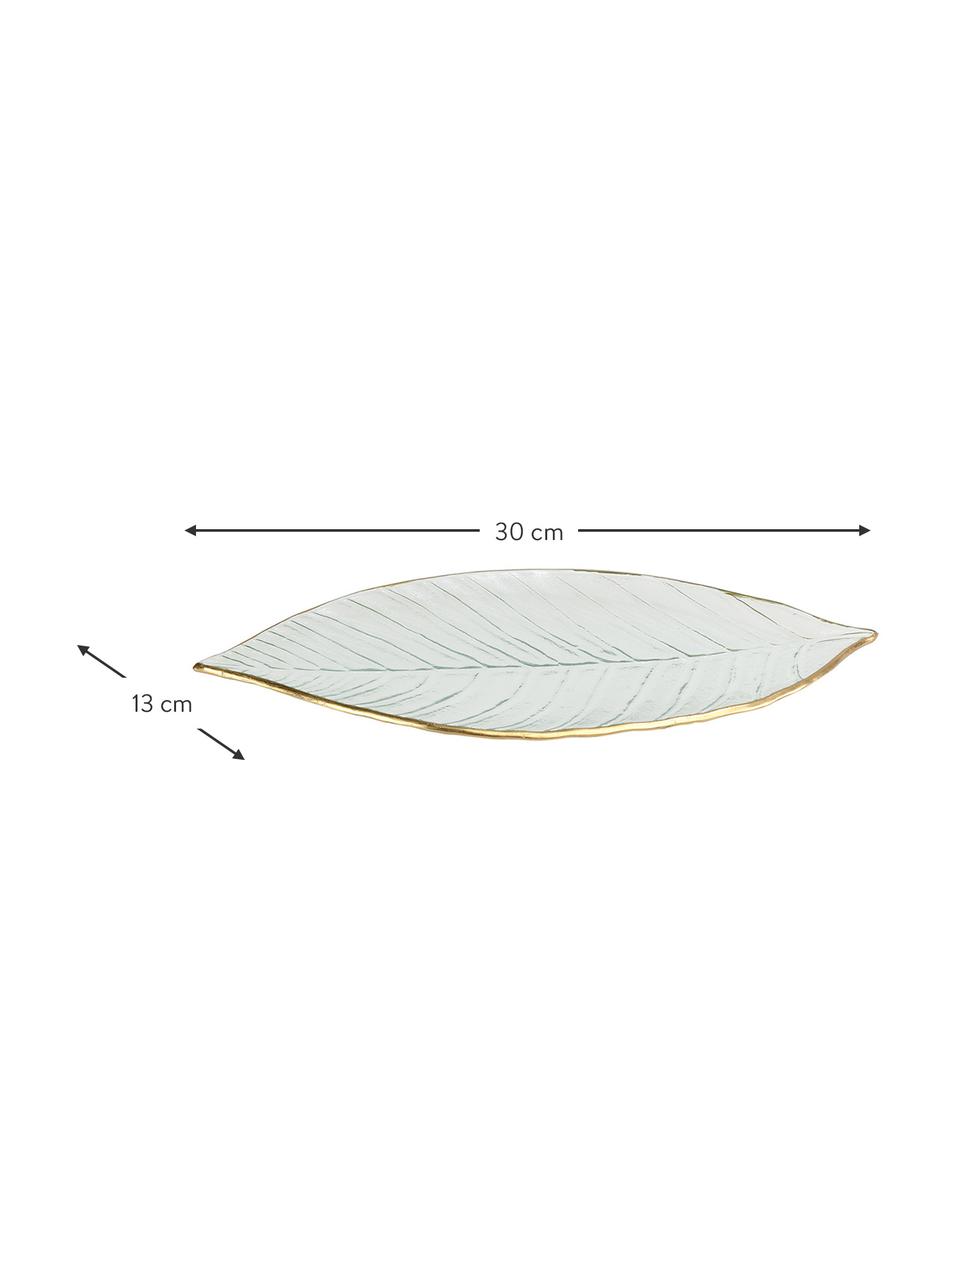 Miska dekoracyjna Leaf, Szklanka, Transparentny, odcienie złotego, S 30 x G 13 cm